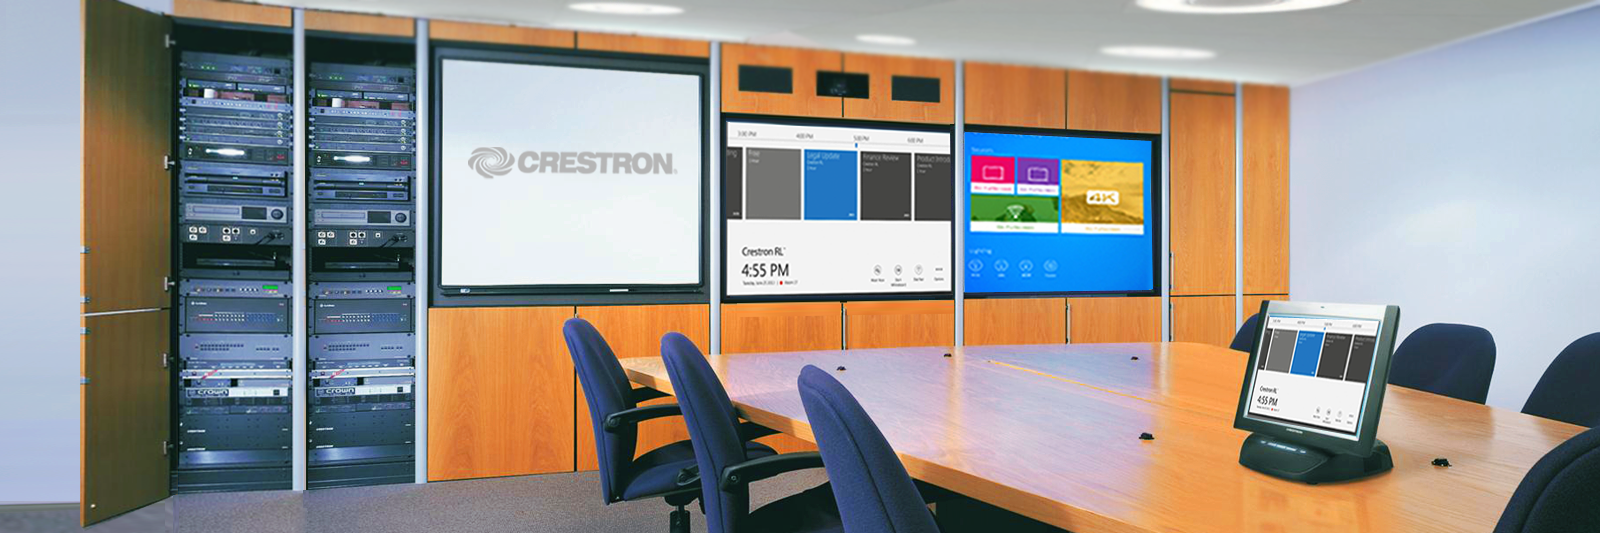 Crestron Conferencing room